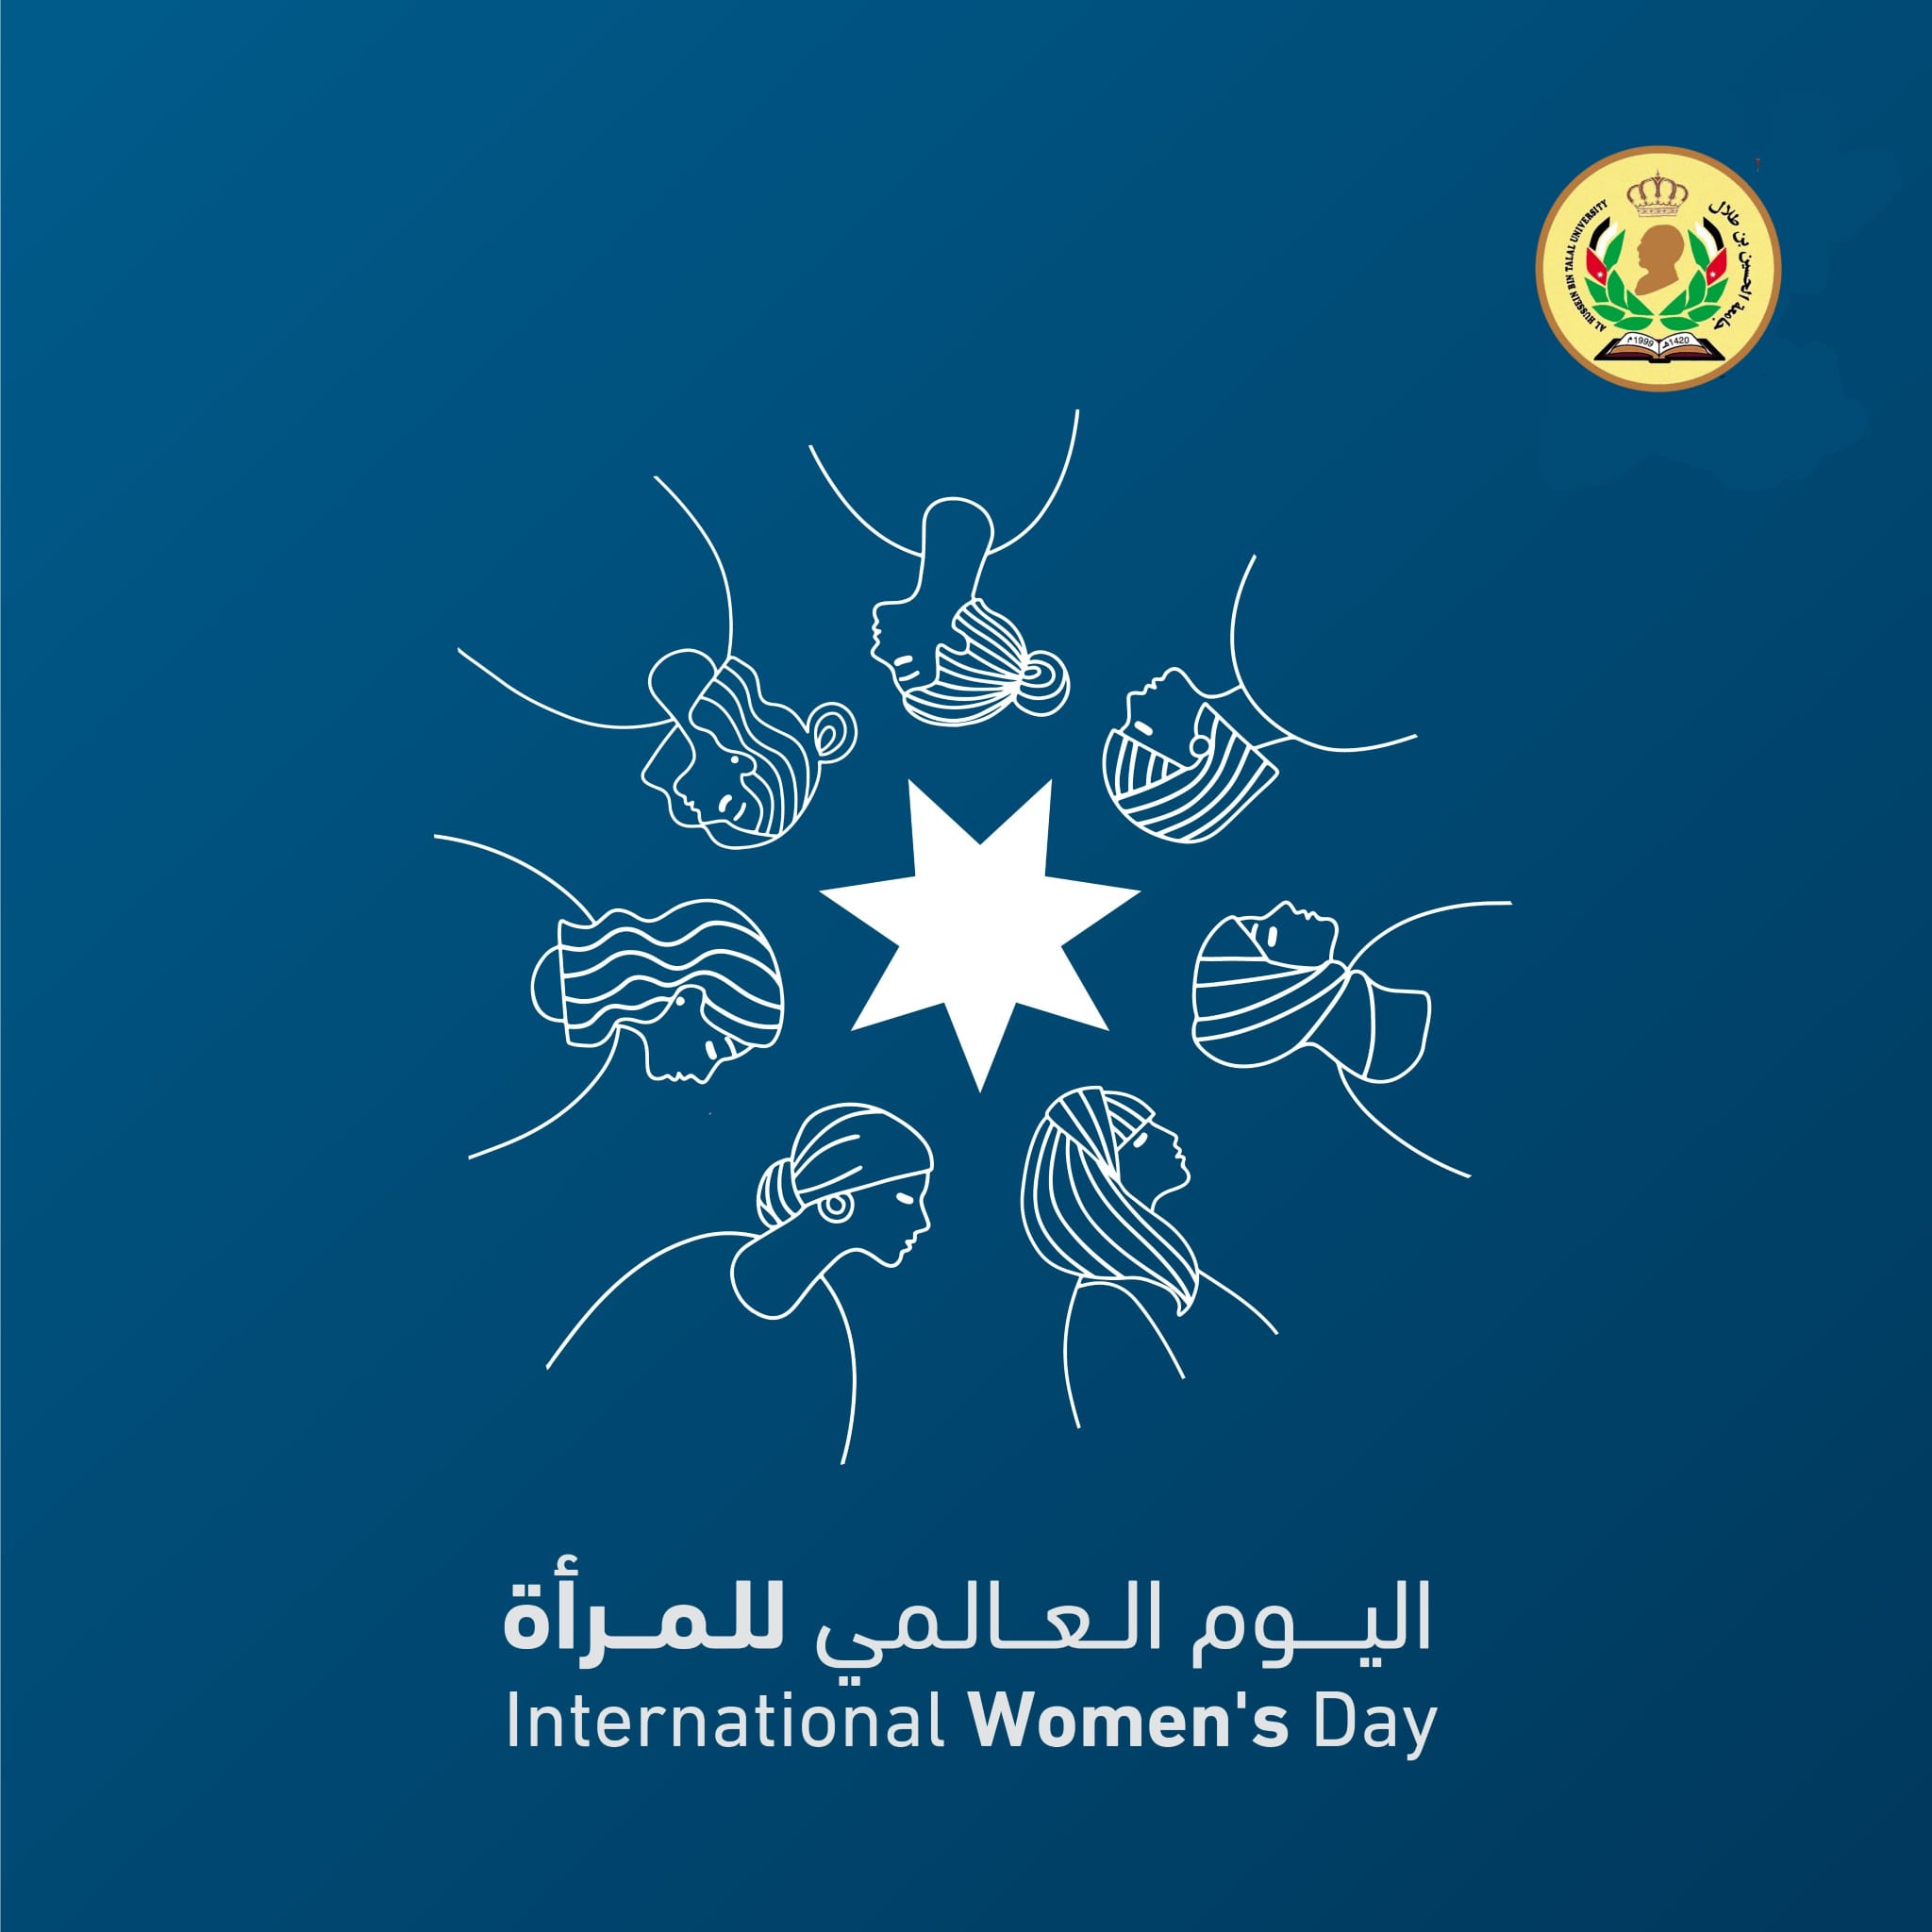 رئيس جامعة الحسين بن طلال يهنئ المرأة الأردنية بمناسبة يوم المرأة العالمي